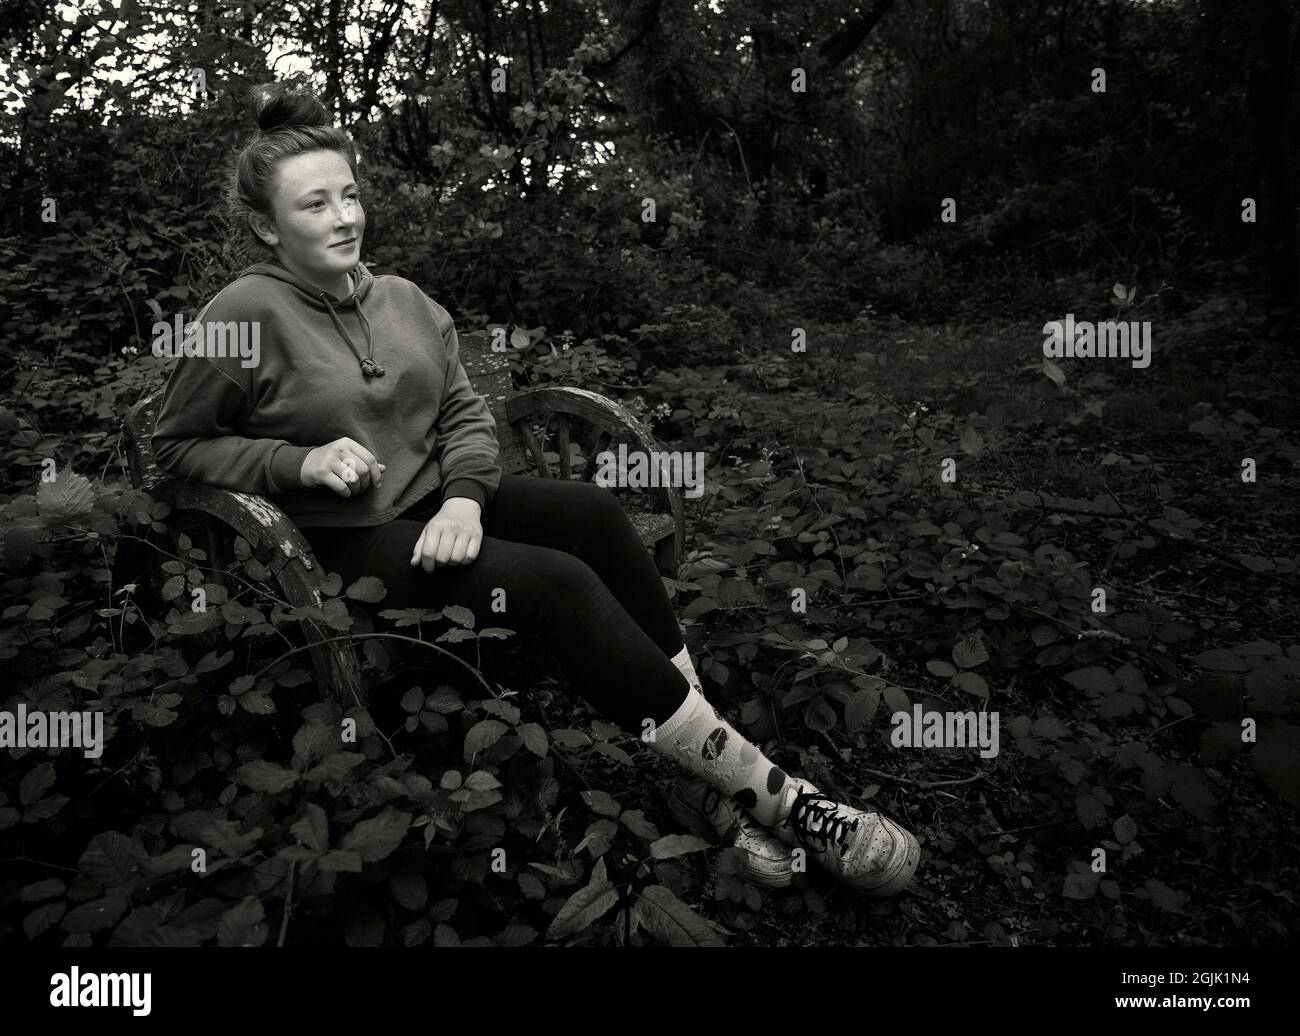 Niña de edad adolescente descansando en una percha en el bosque Foto de stock